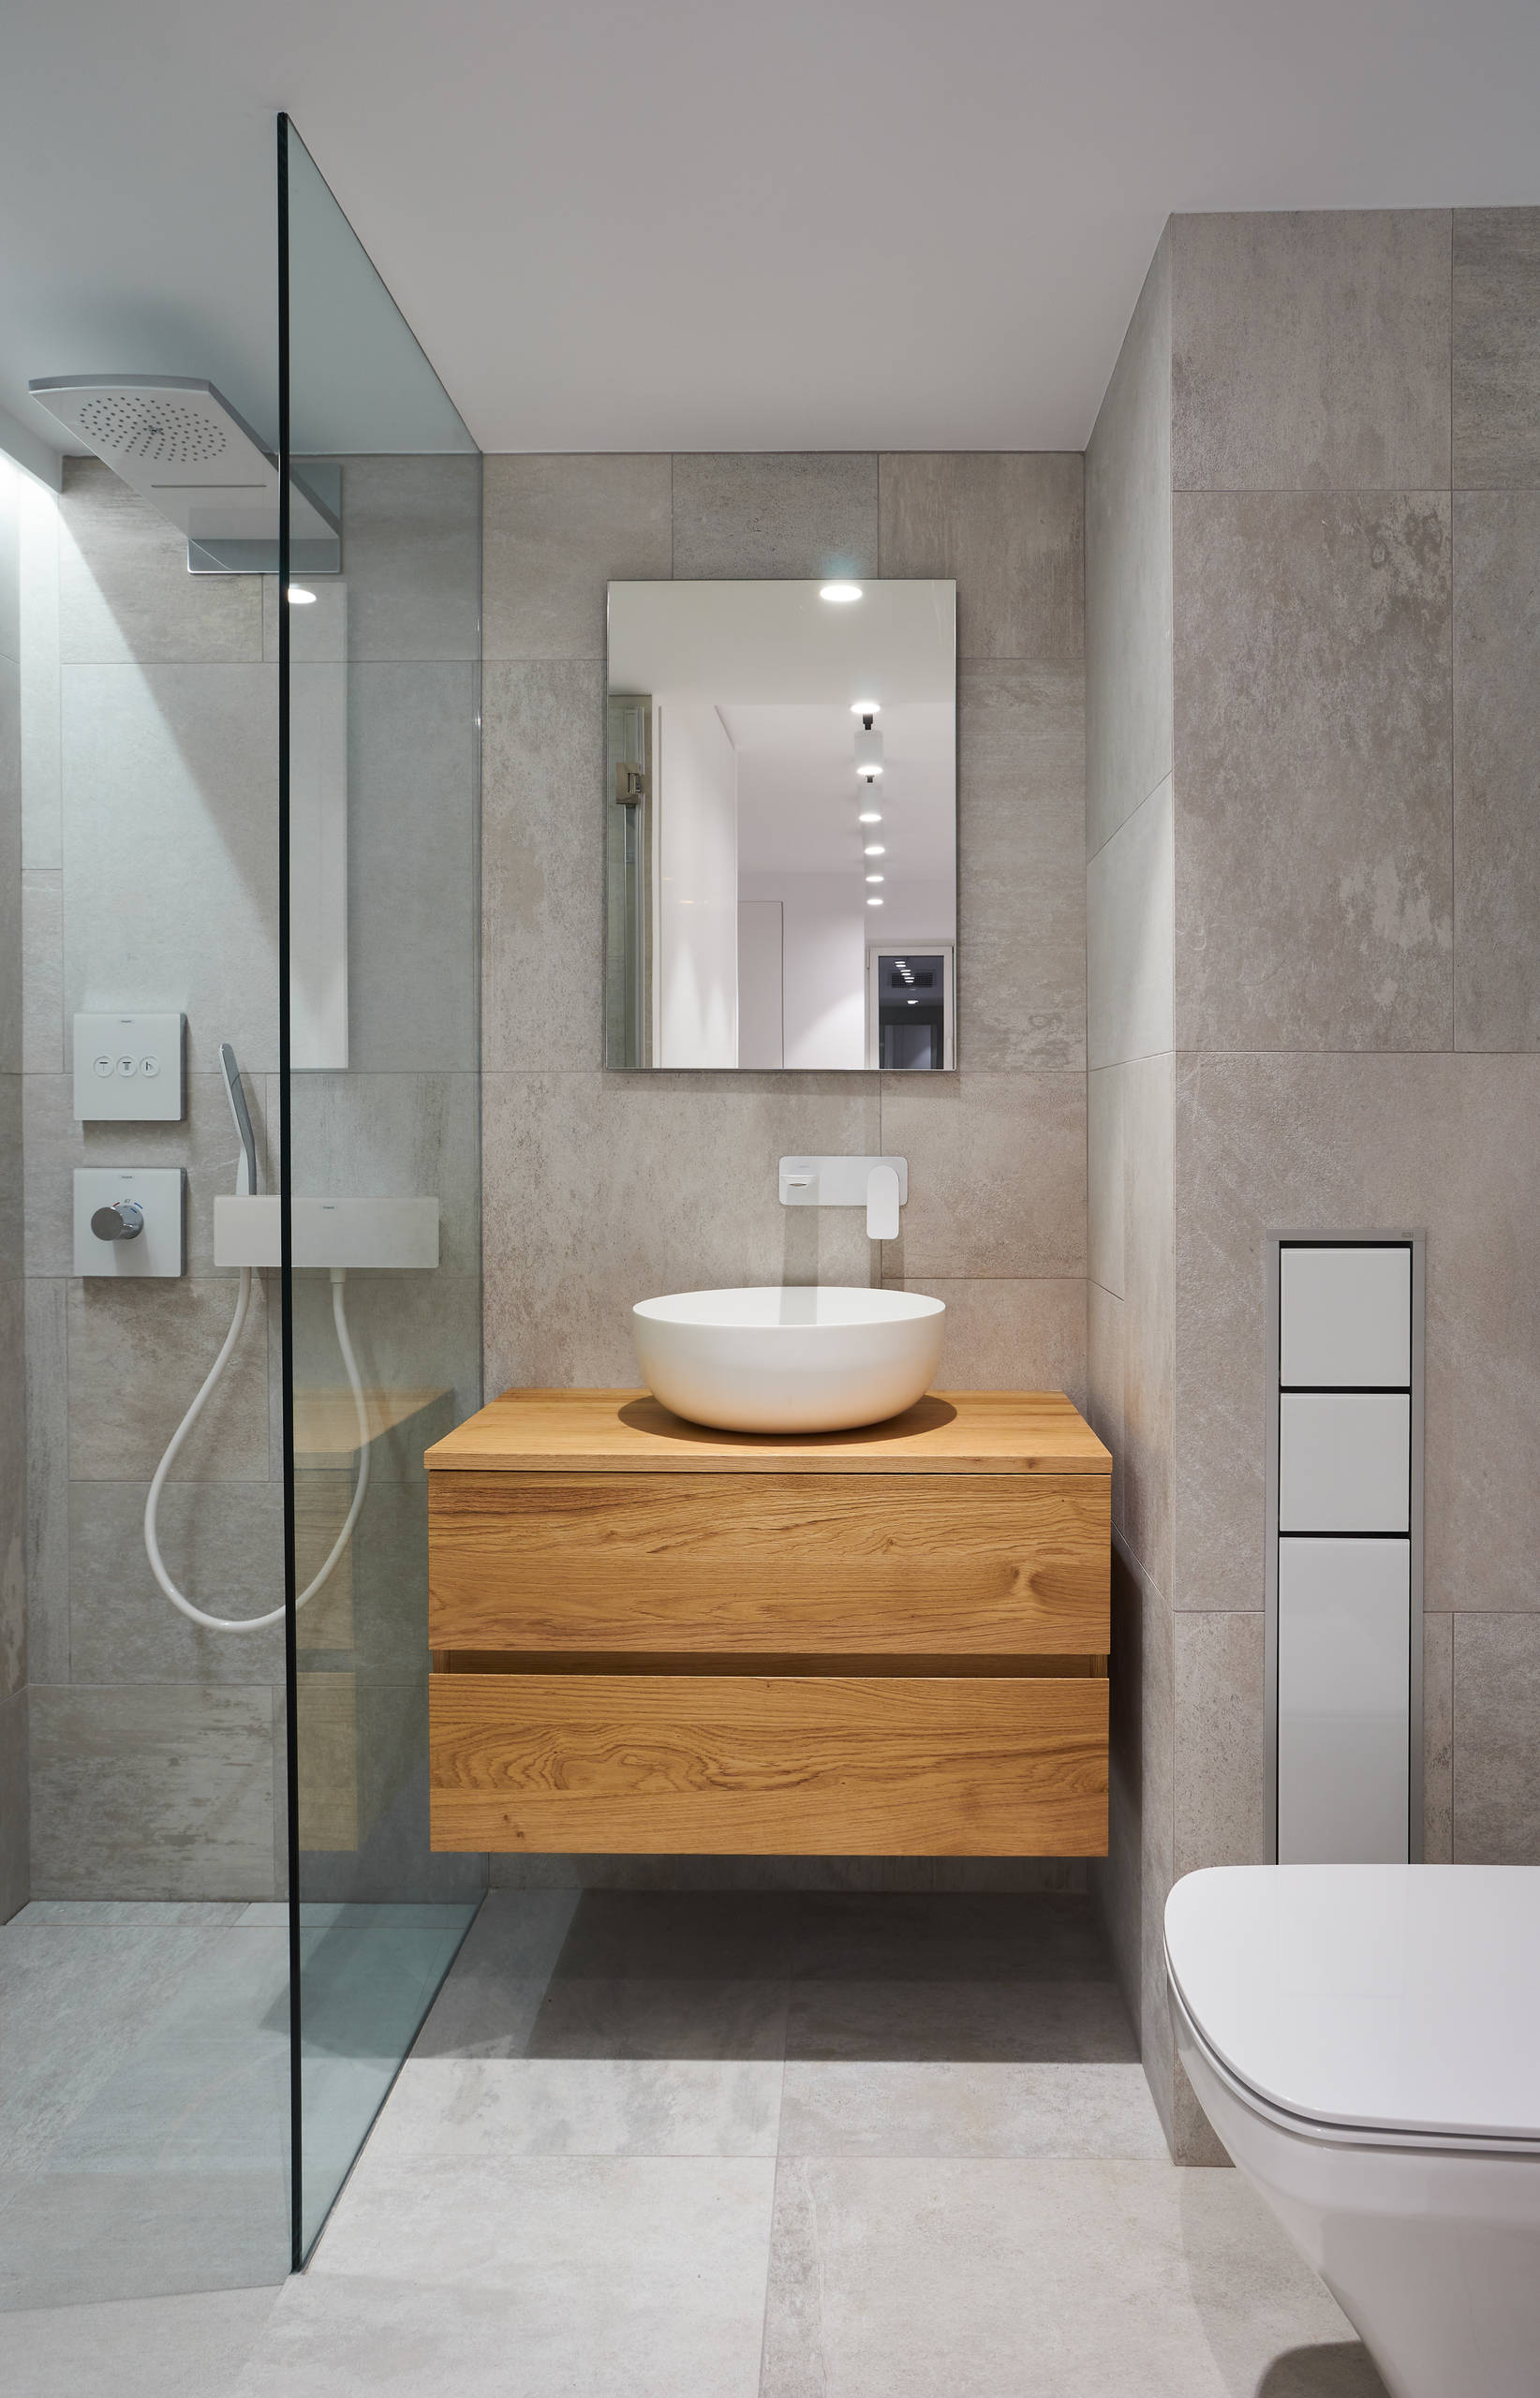 Baño gris y blanco – Ideas para decorar diseños residenciales